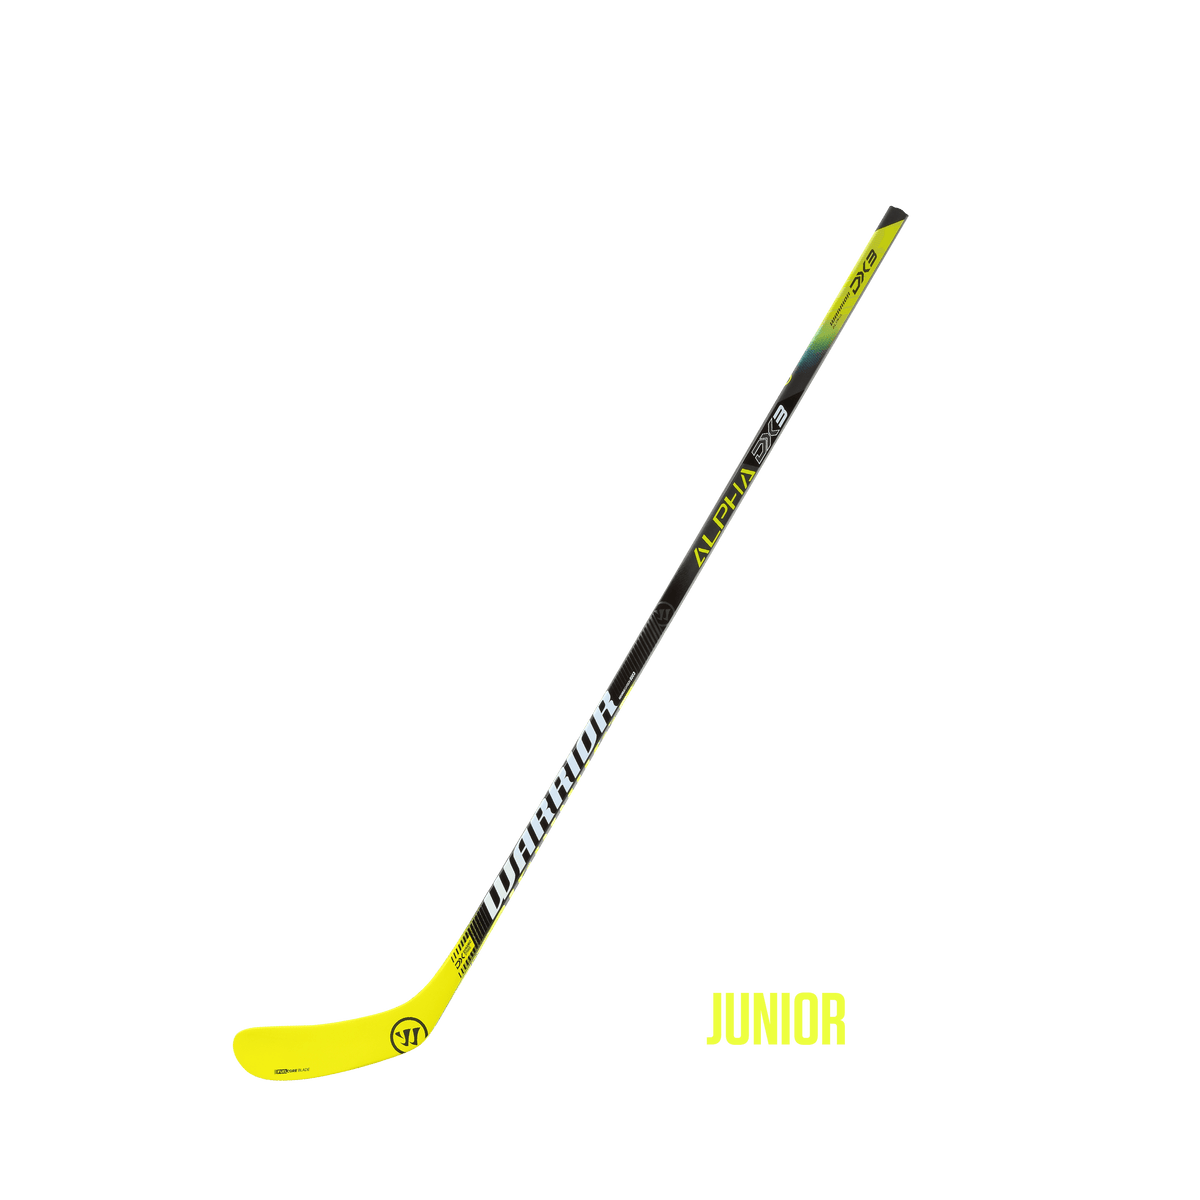 Warrior Alpha DX 3 Ice Hockey Stick - Junior